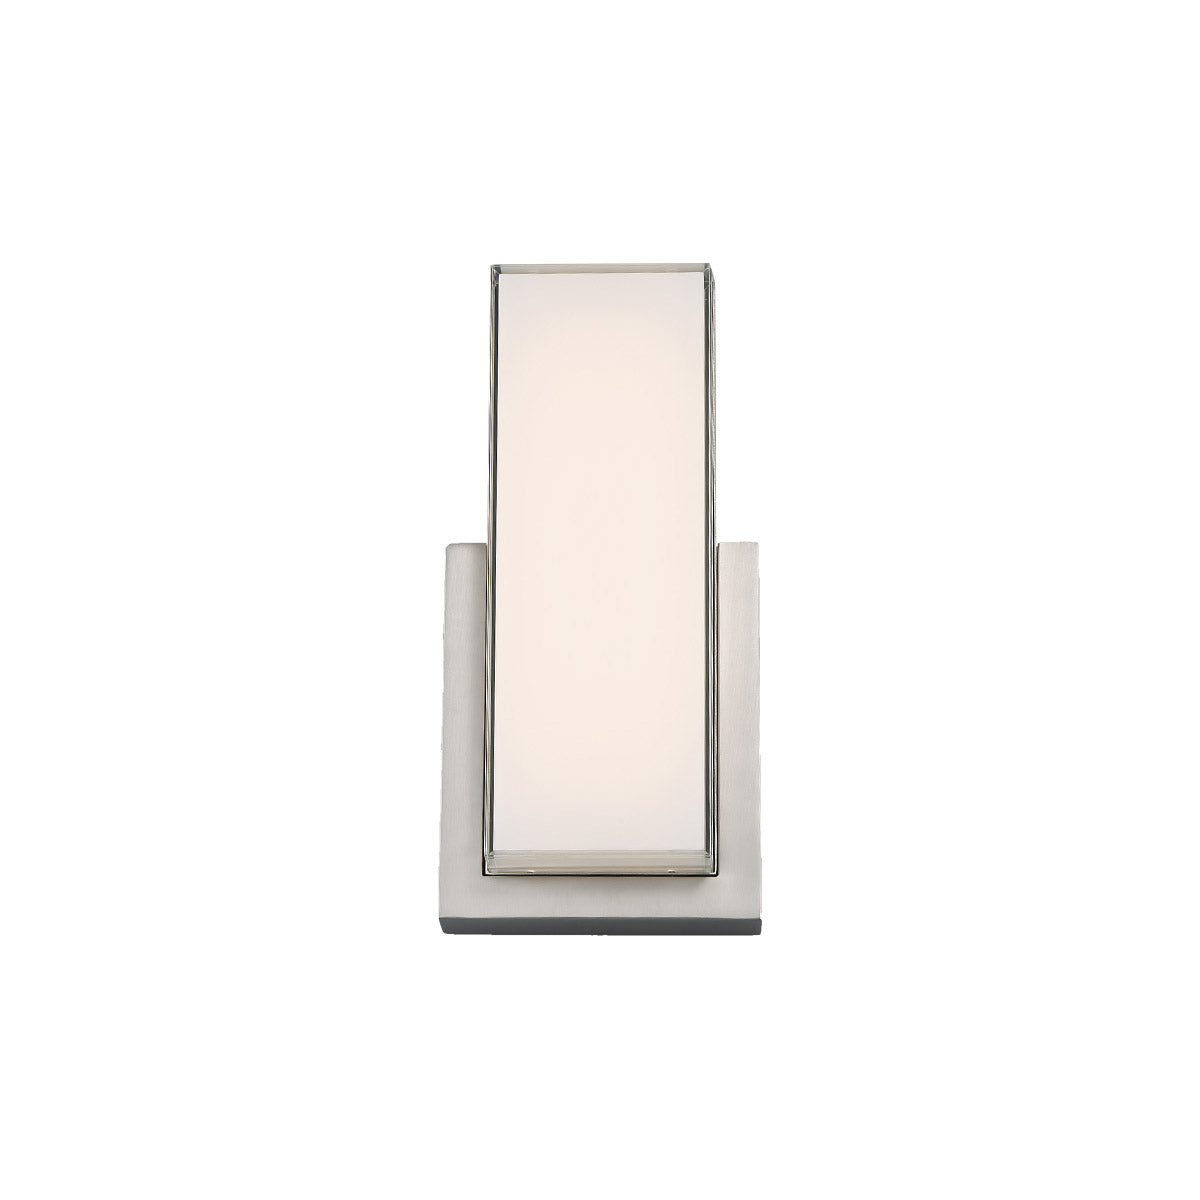 Corbusier 15 In LED Flush Mount Sconce 827 Lumens 3000K Nickel Finish